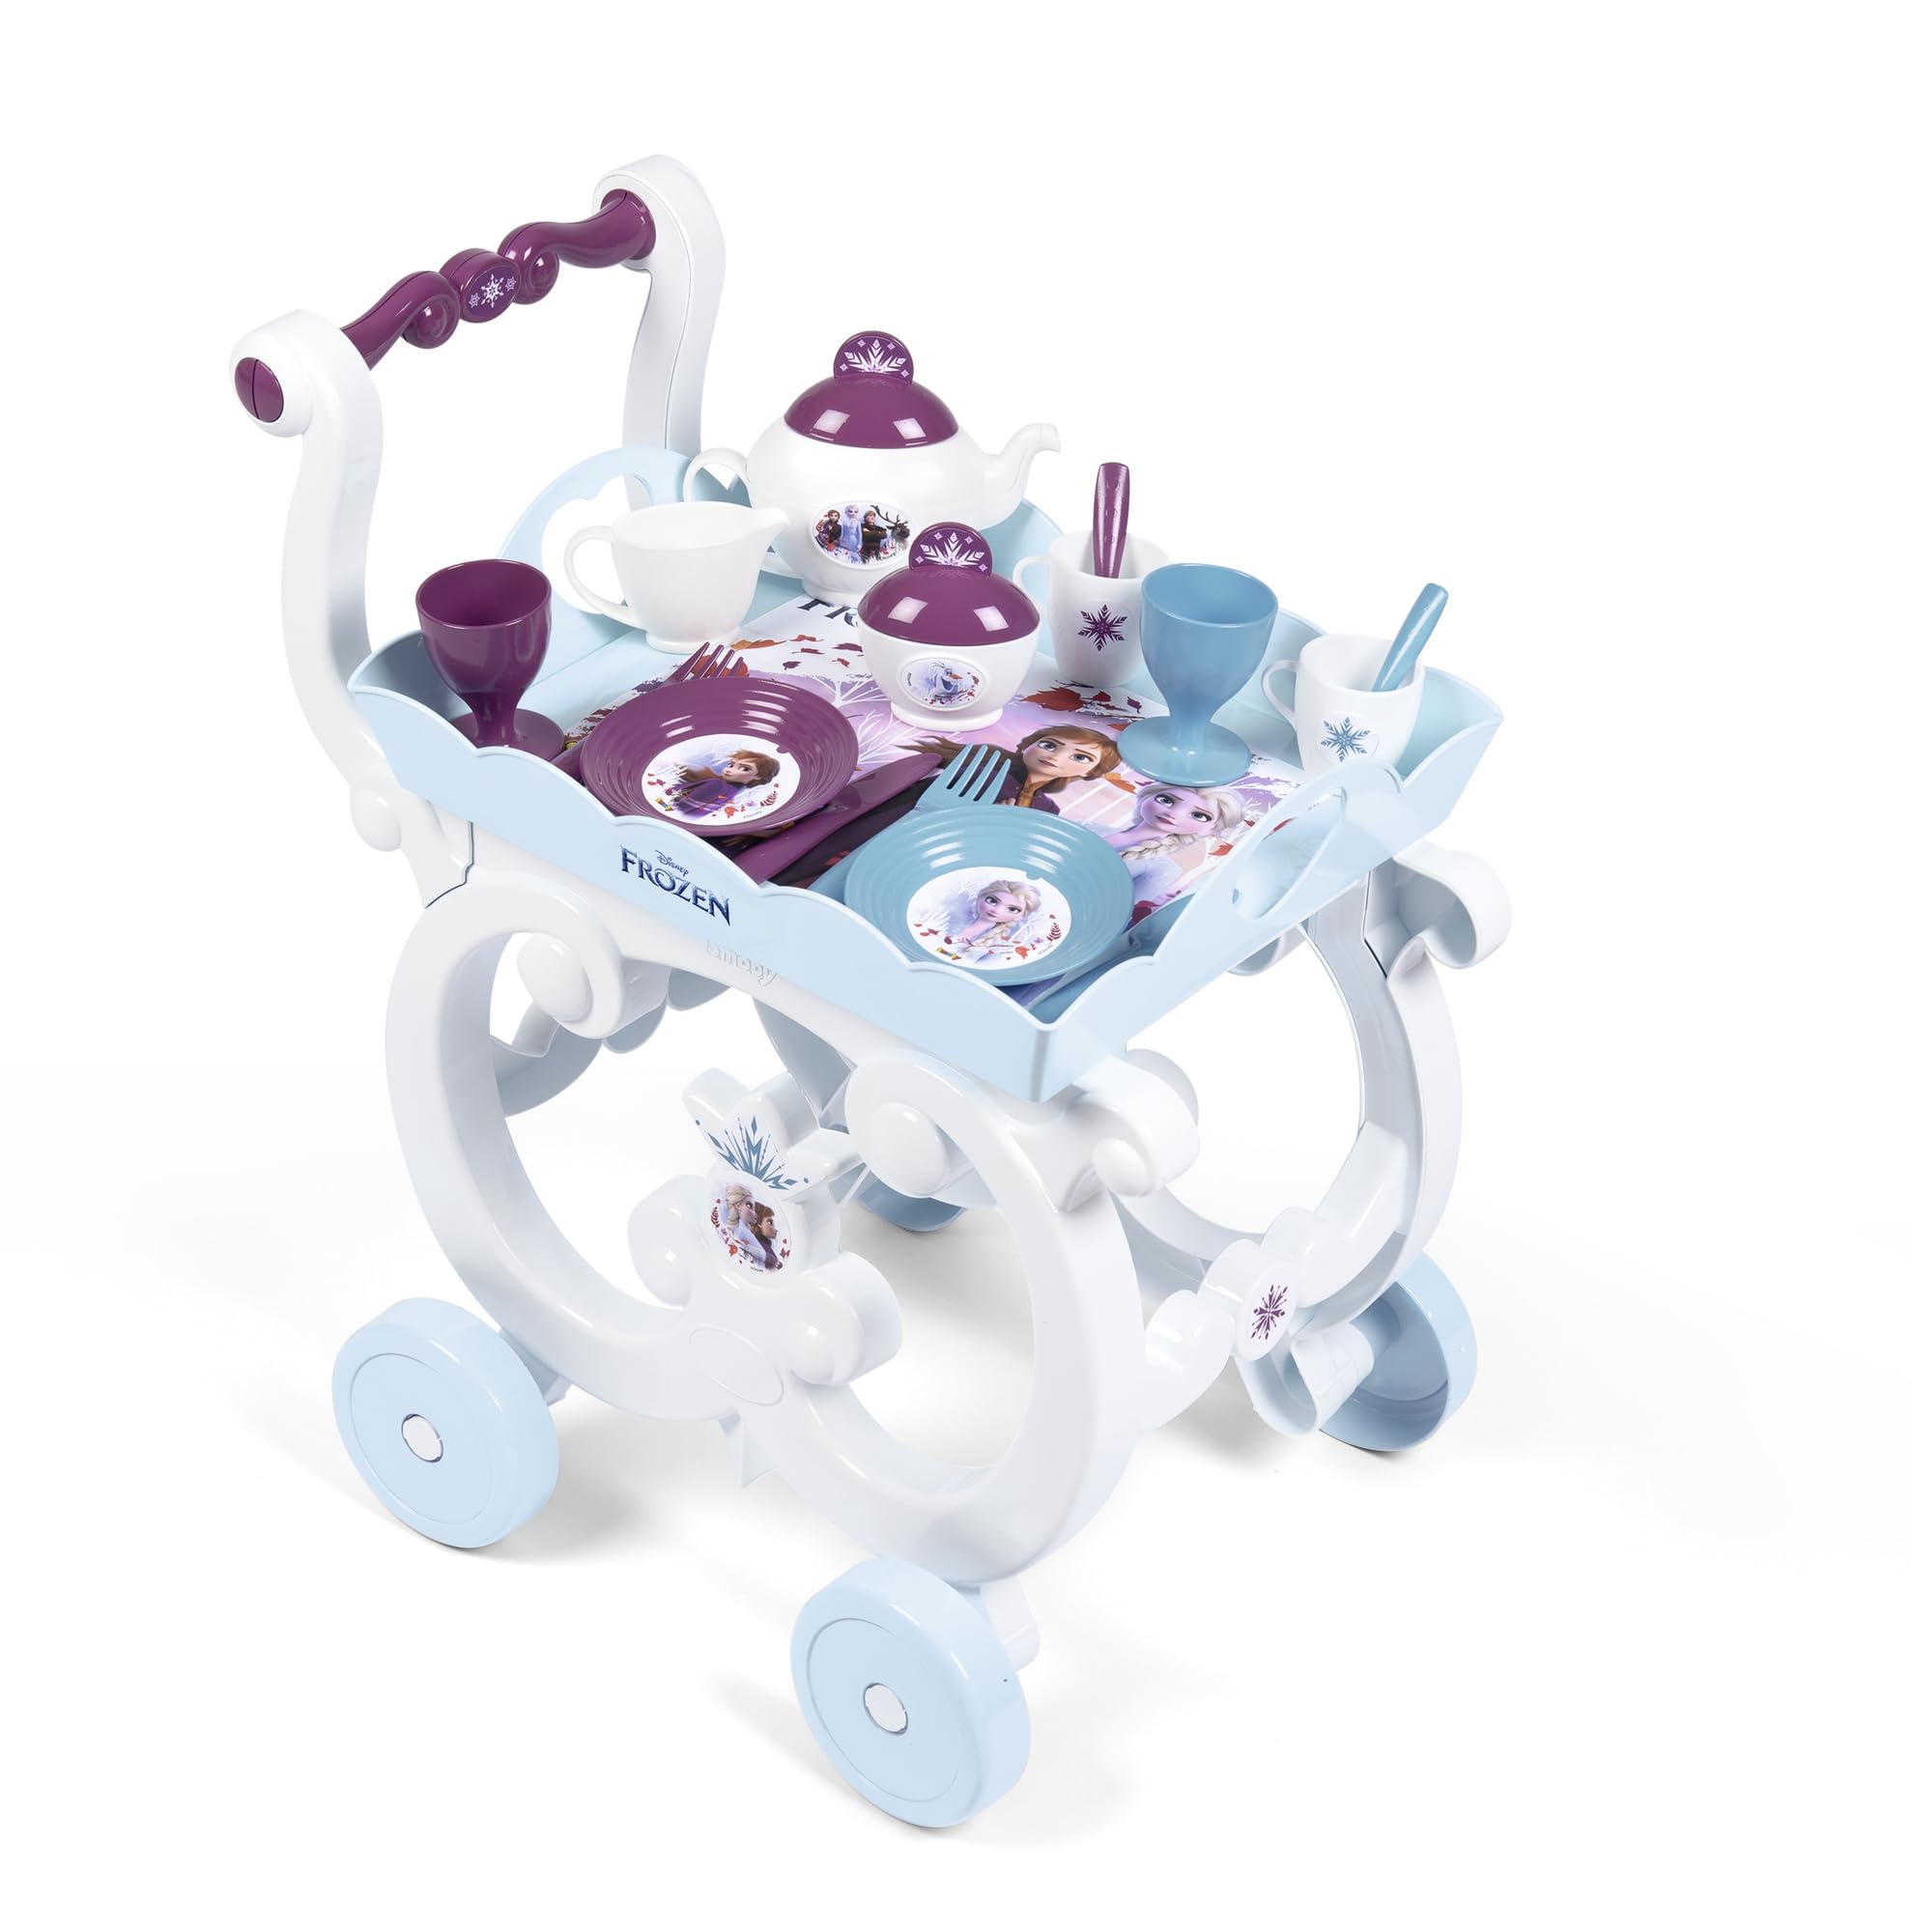 Smoby - Die Eiskönigin Servierwagen - Spielset mit Spielzeug-Teeservice, inkl. Teller, Besteck, Becher, Serviertablett und Wagen auf Rollen für Kinder ab 3 Jahren